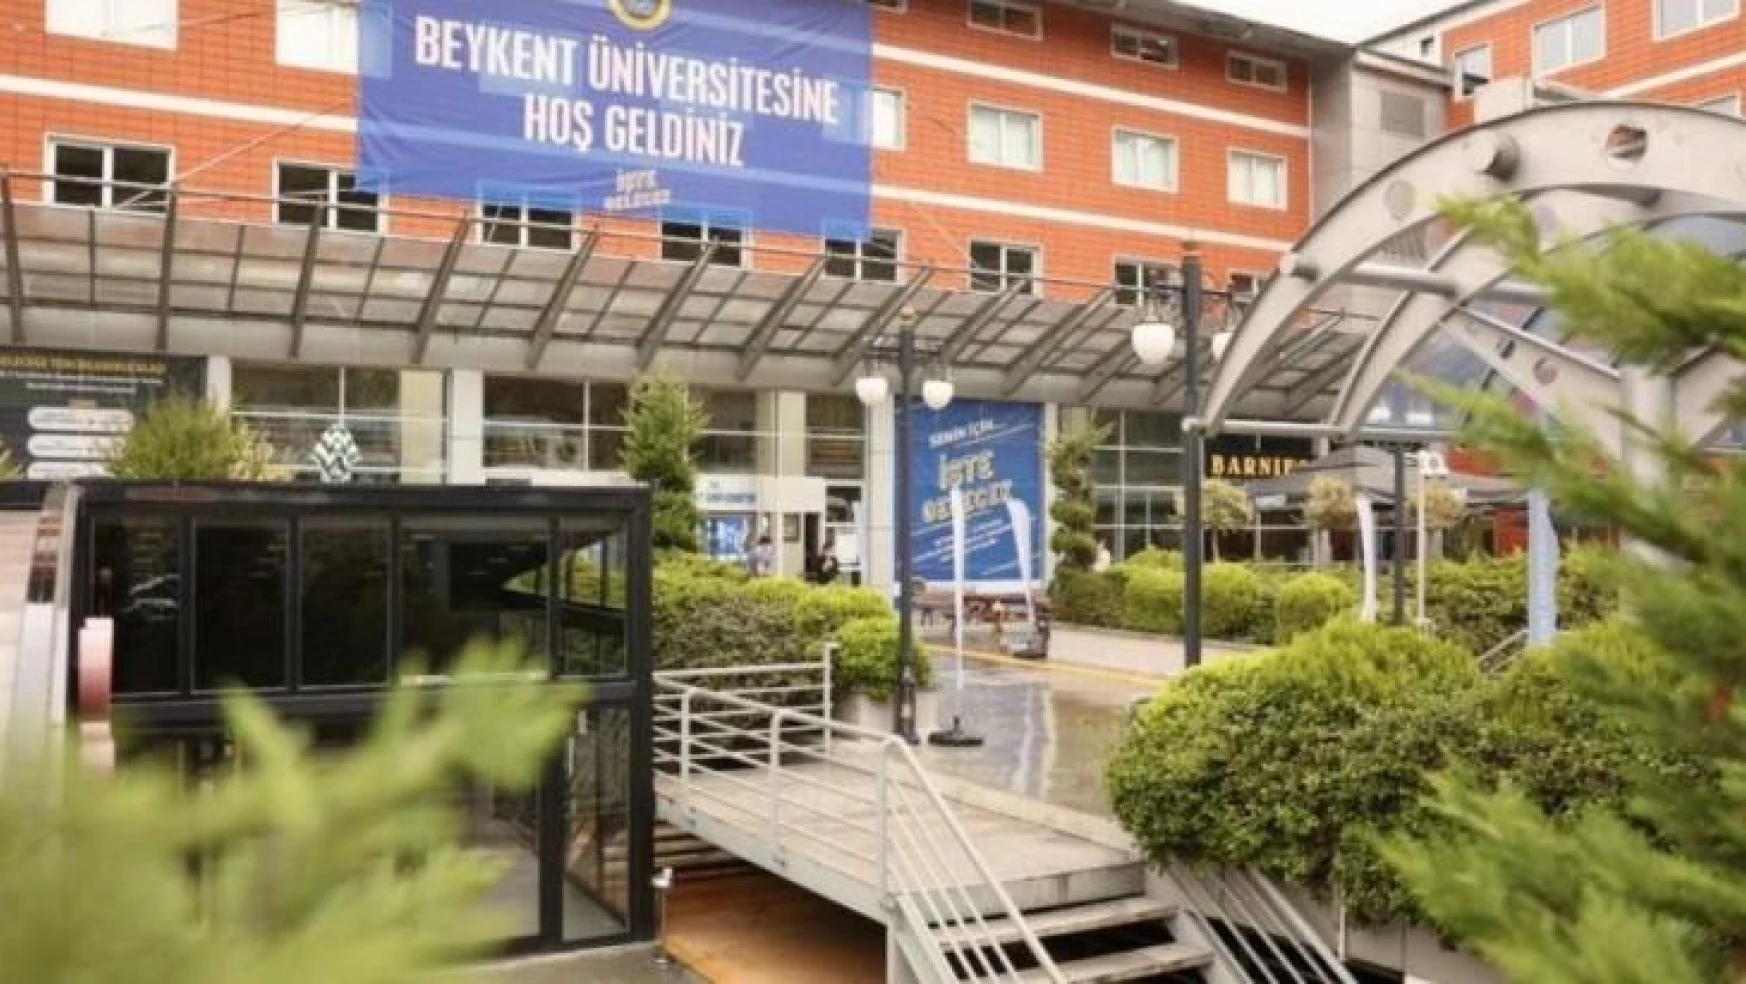 Beykent Üniversitesinden ücret güncellemelerine ilişkin yeni açıklama